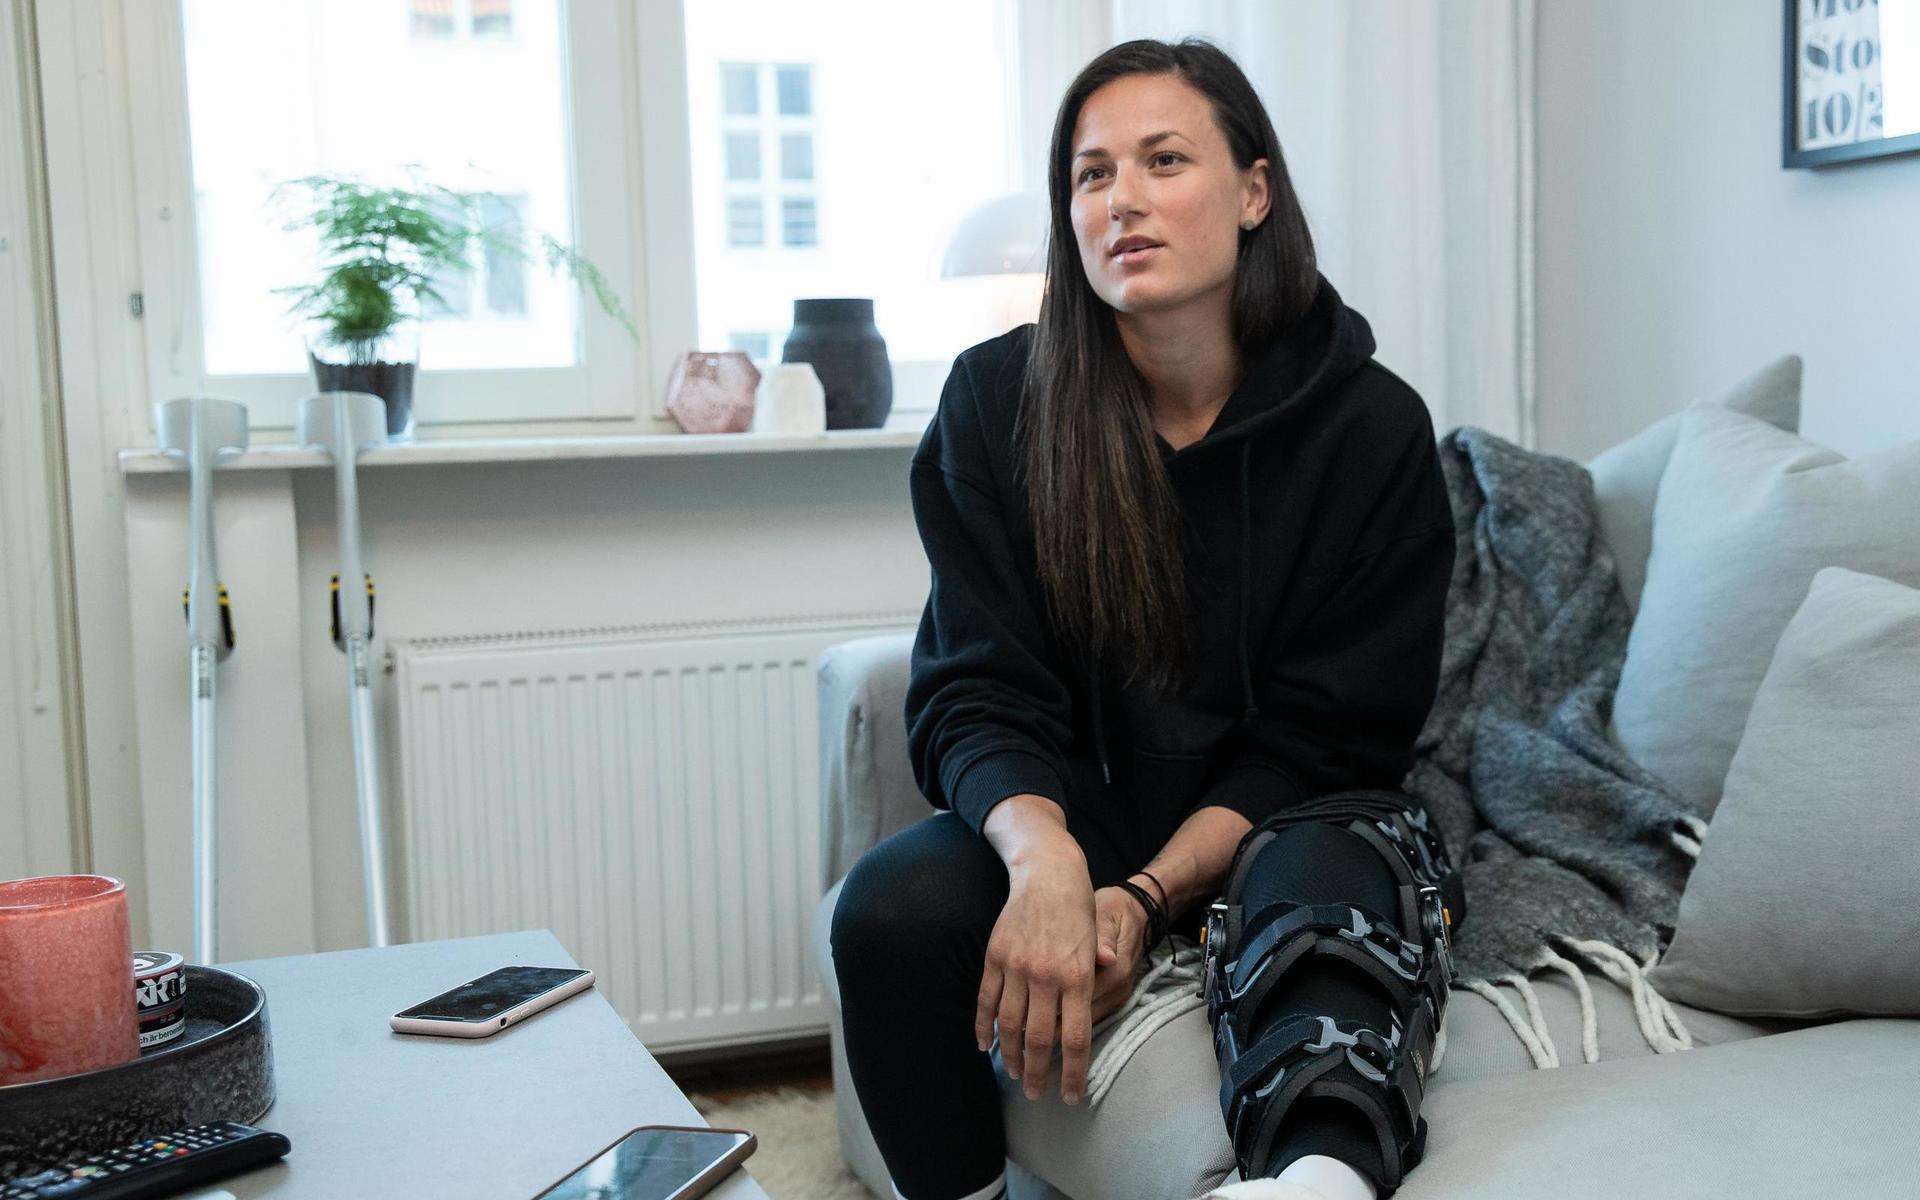 Början av rehabiliteringen var tuff för Beata Kollmats: ”Kände sig nere”.